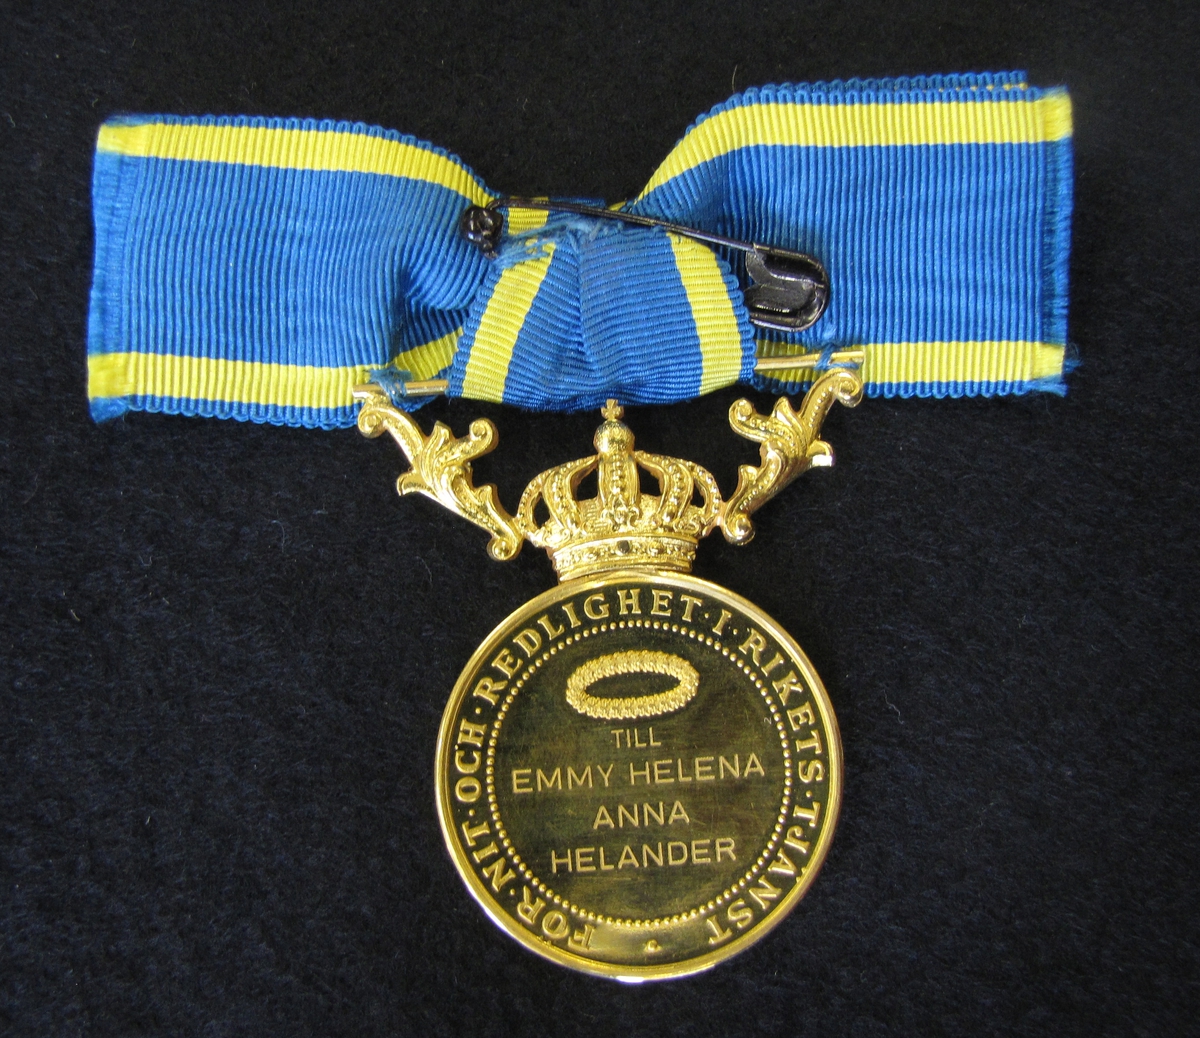 Medalj till Emmy Helena Anna Helander för nit och redlighet i rikets tjänst.  Finns ett etui till medaljen (VM09633:c). 

Medaljen är av 23 K guld försedd med krona och bärornament av 18 K guld.